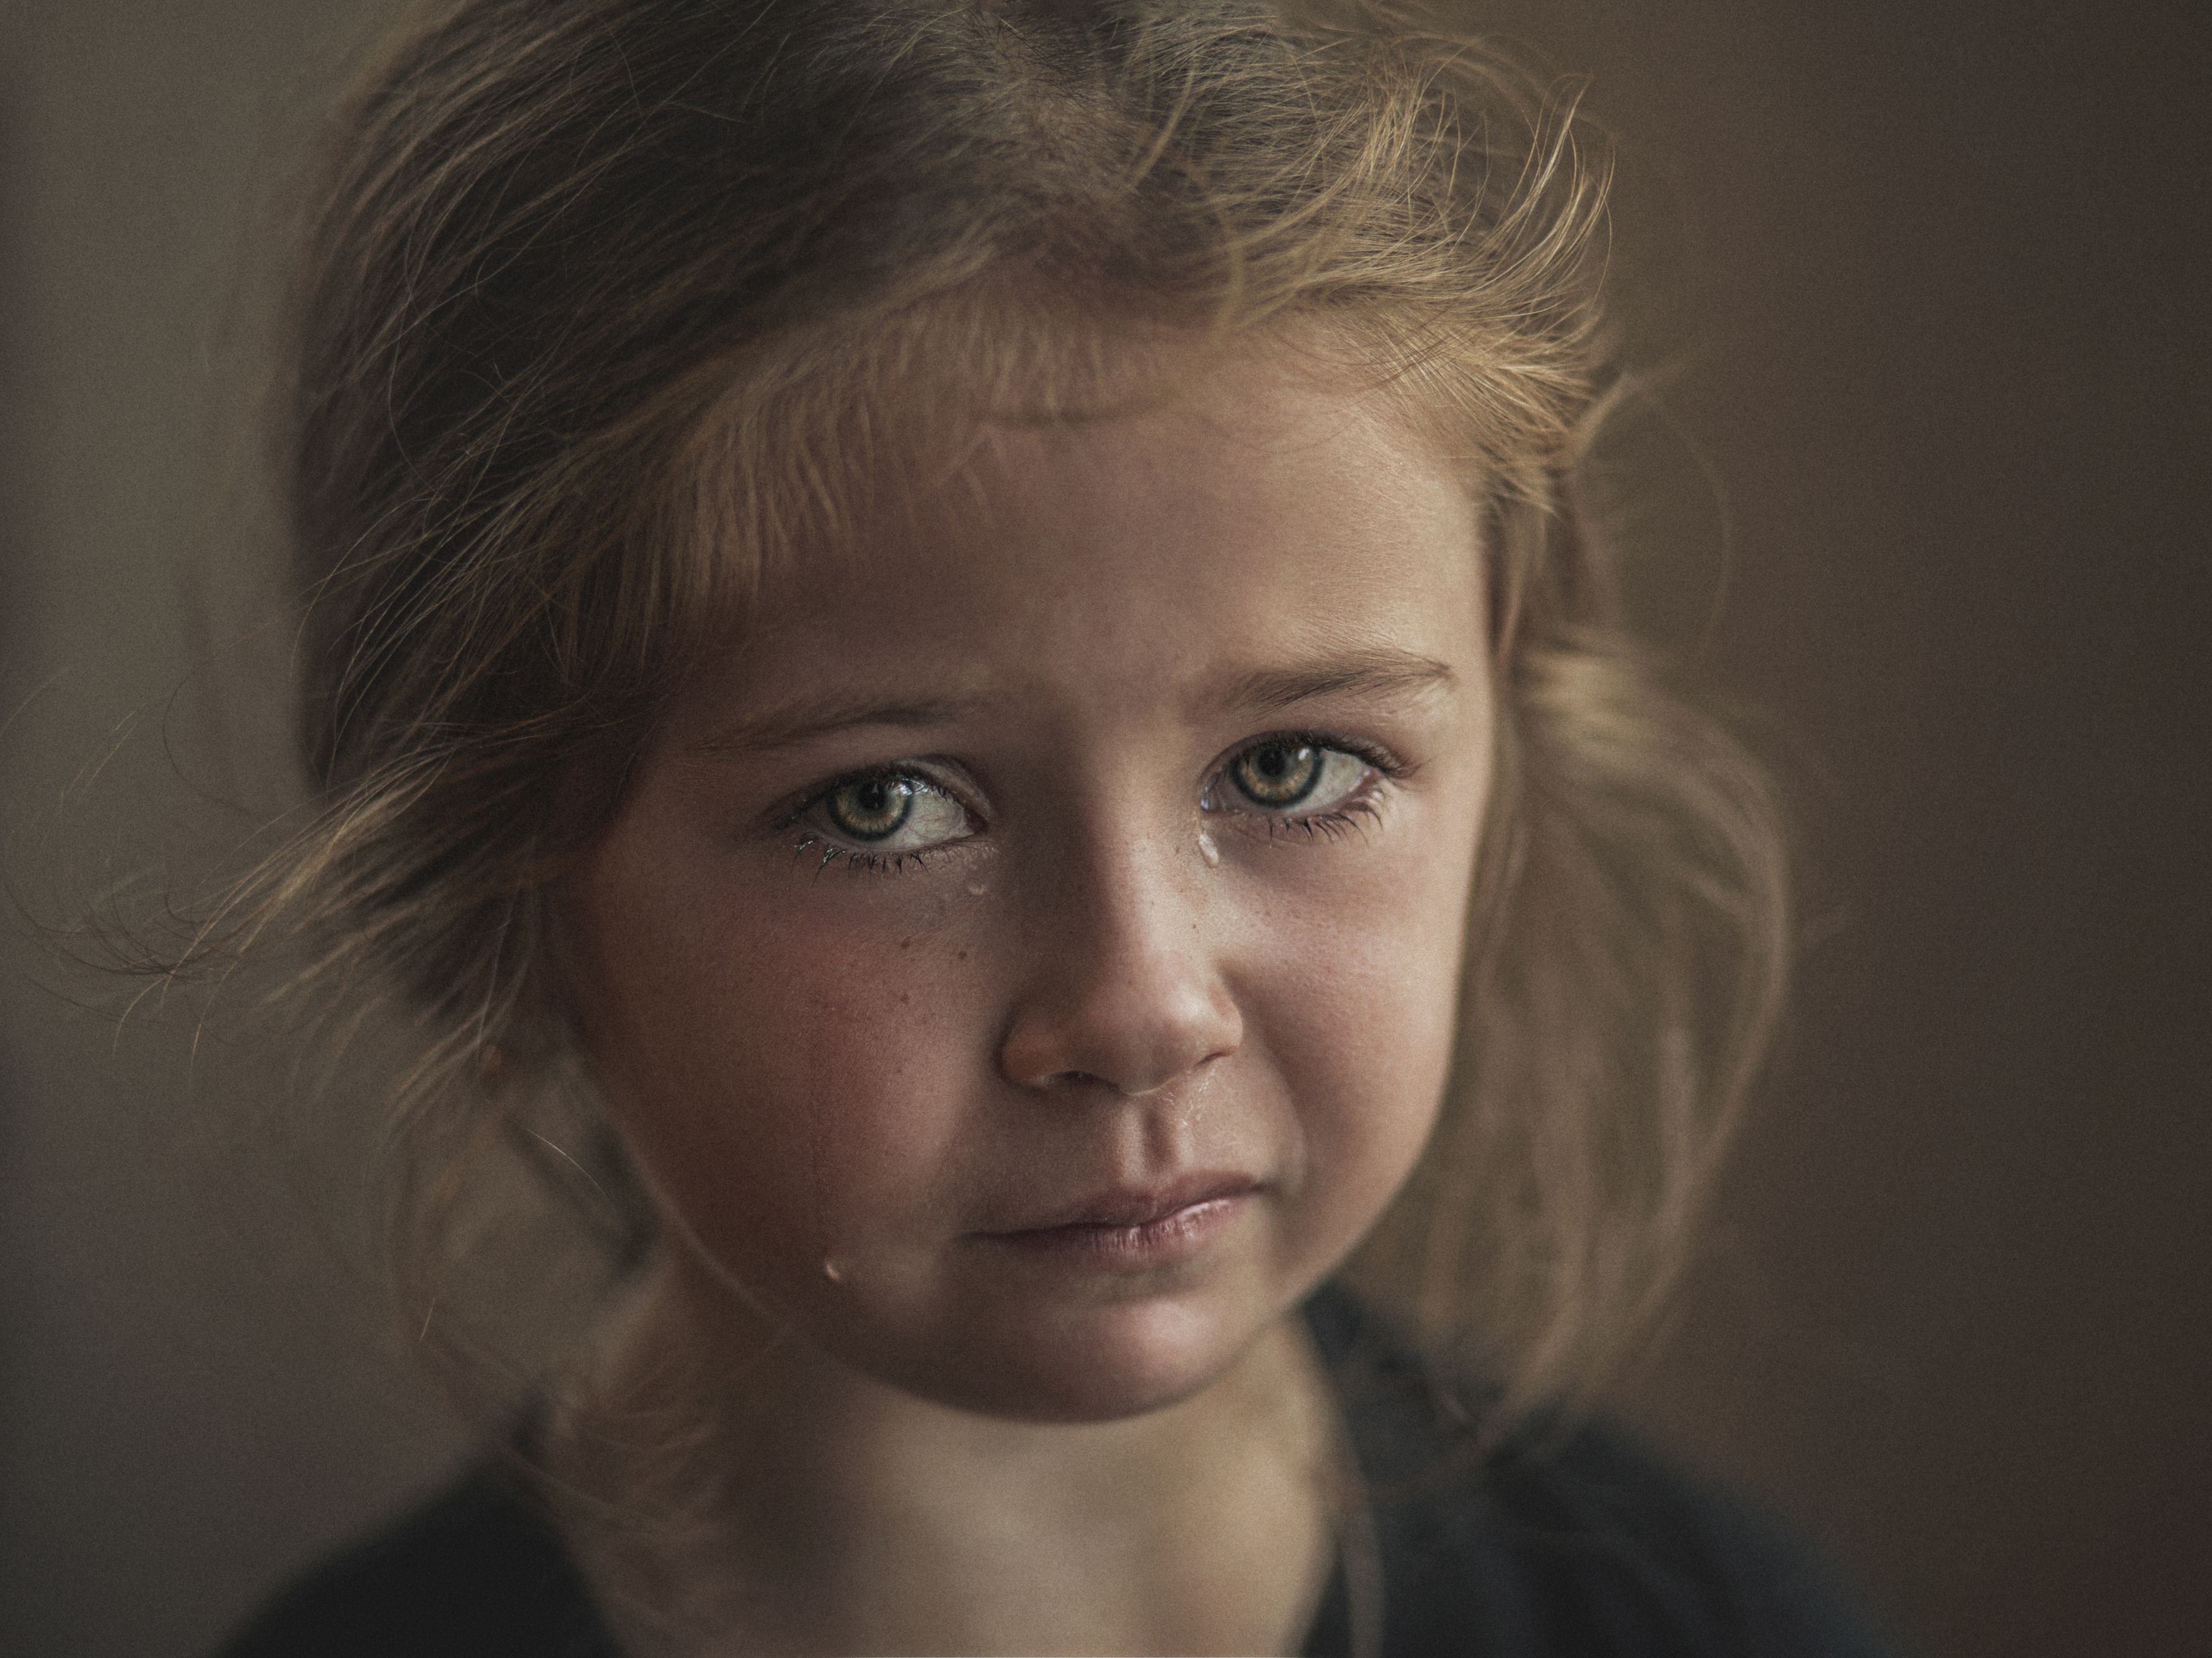 портрет, ребёнок, эмоции, слезы, взгляд, child, portrait, emotions, sight, Алексей Сологубов